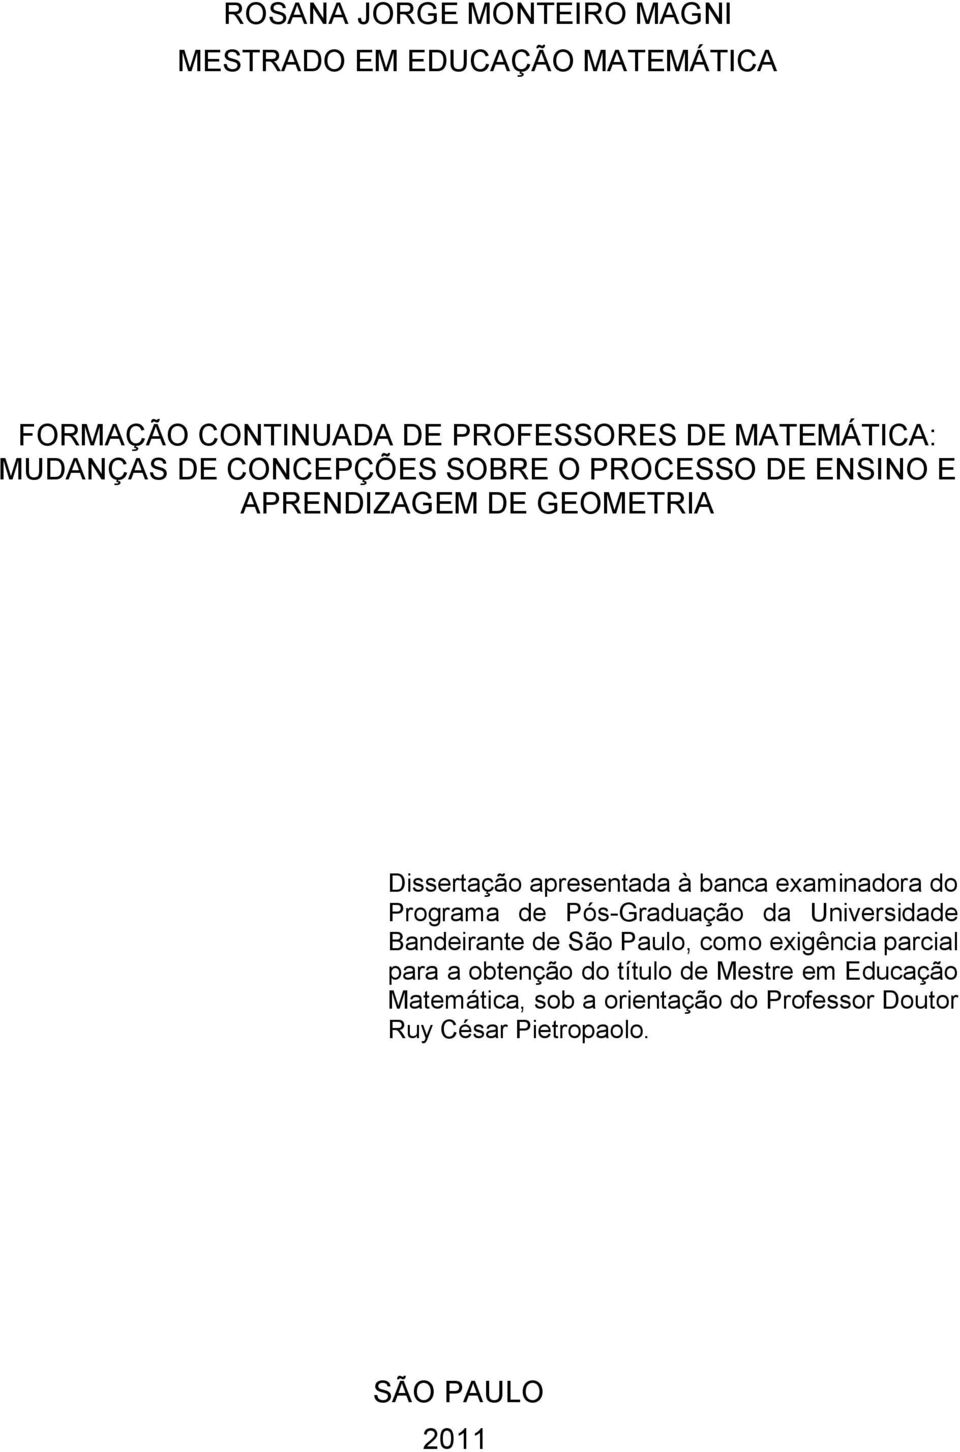 examinadora do Programa de Pós-Graduação da Universidade Bandeirante de São Paulo, como exigência parcial para a